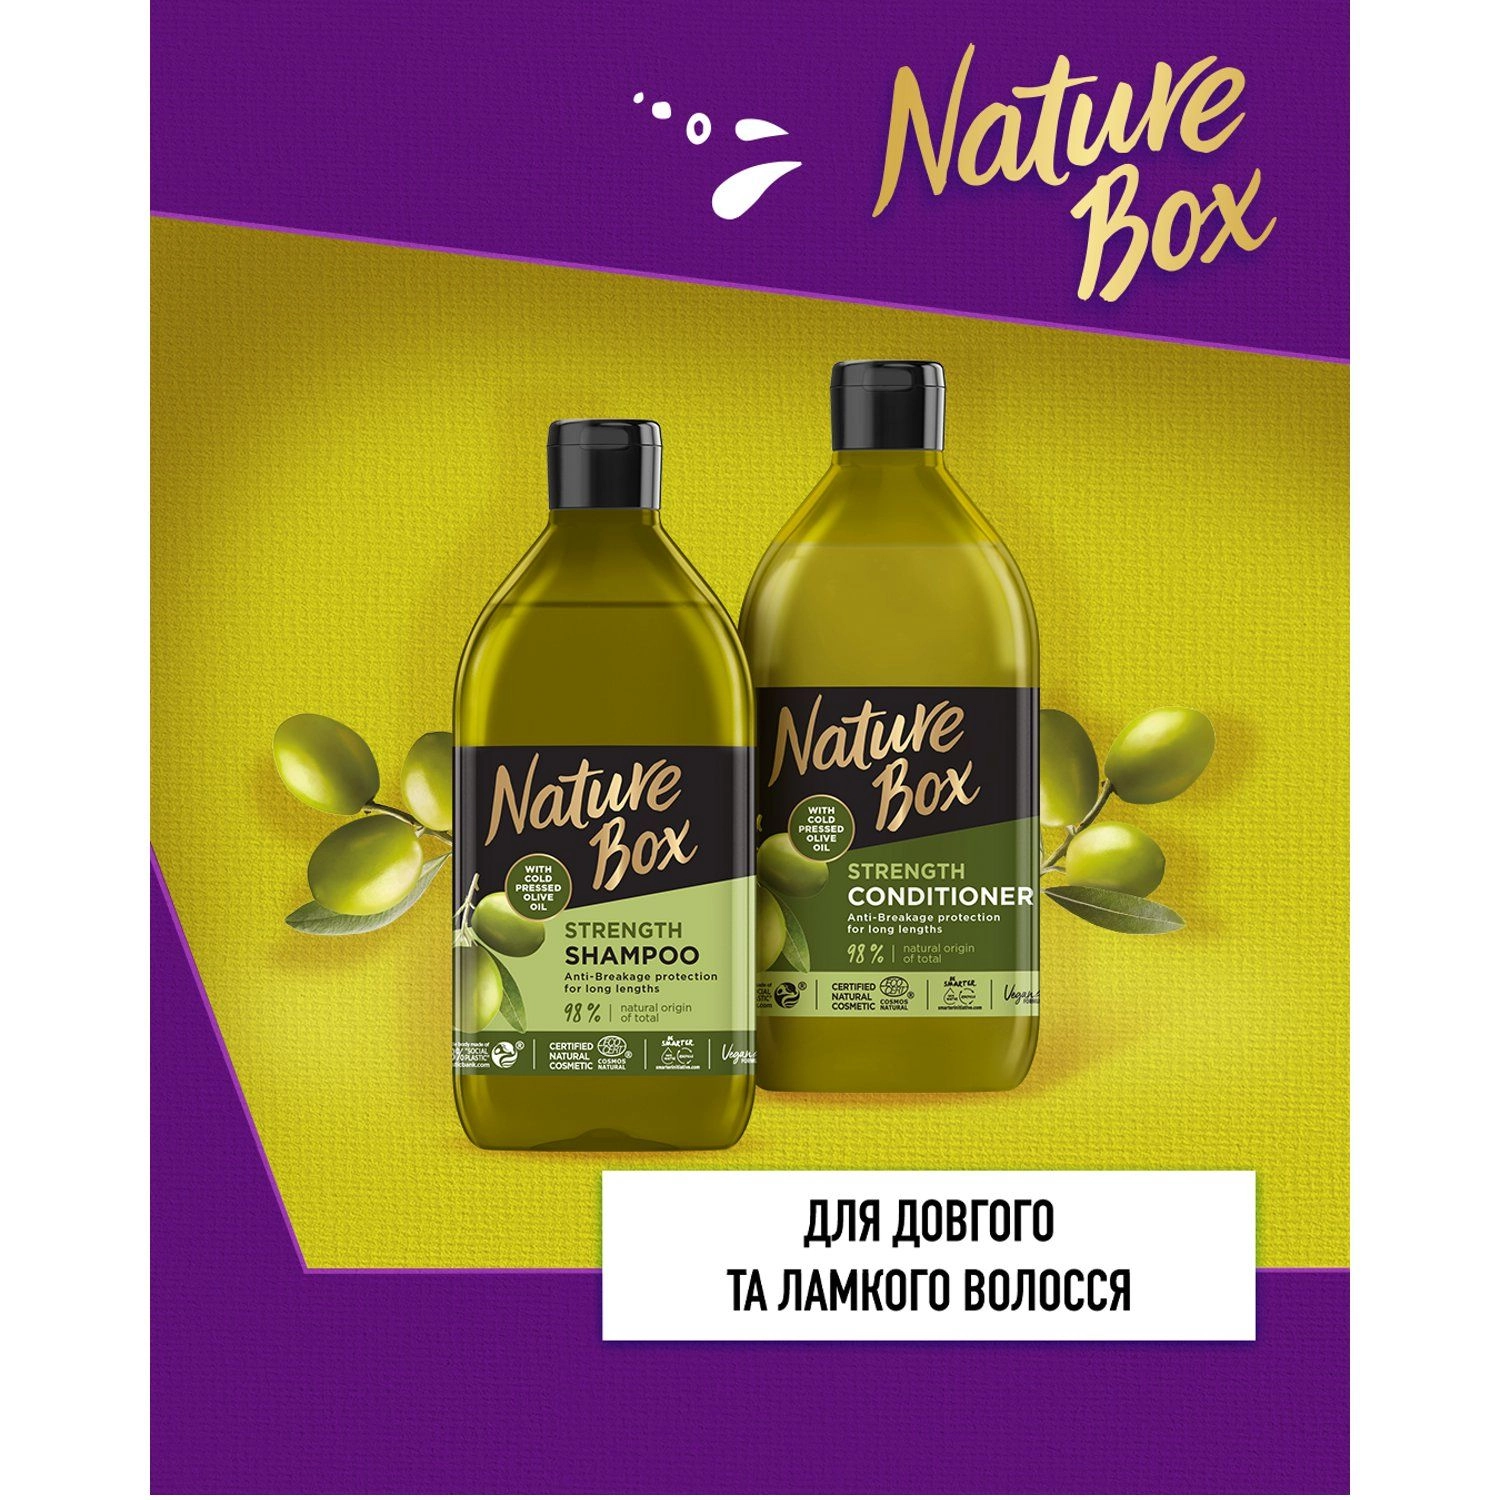 Укрепляющий шампунь для волос с оливковым маслом холодного отжима - Nature Box Strength Shampoo, 385 мл - фото N4